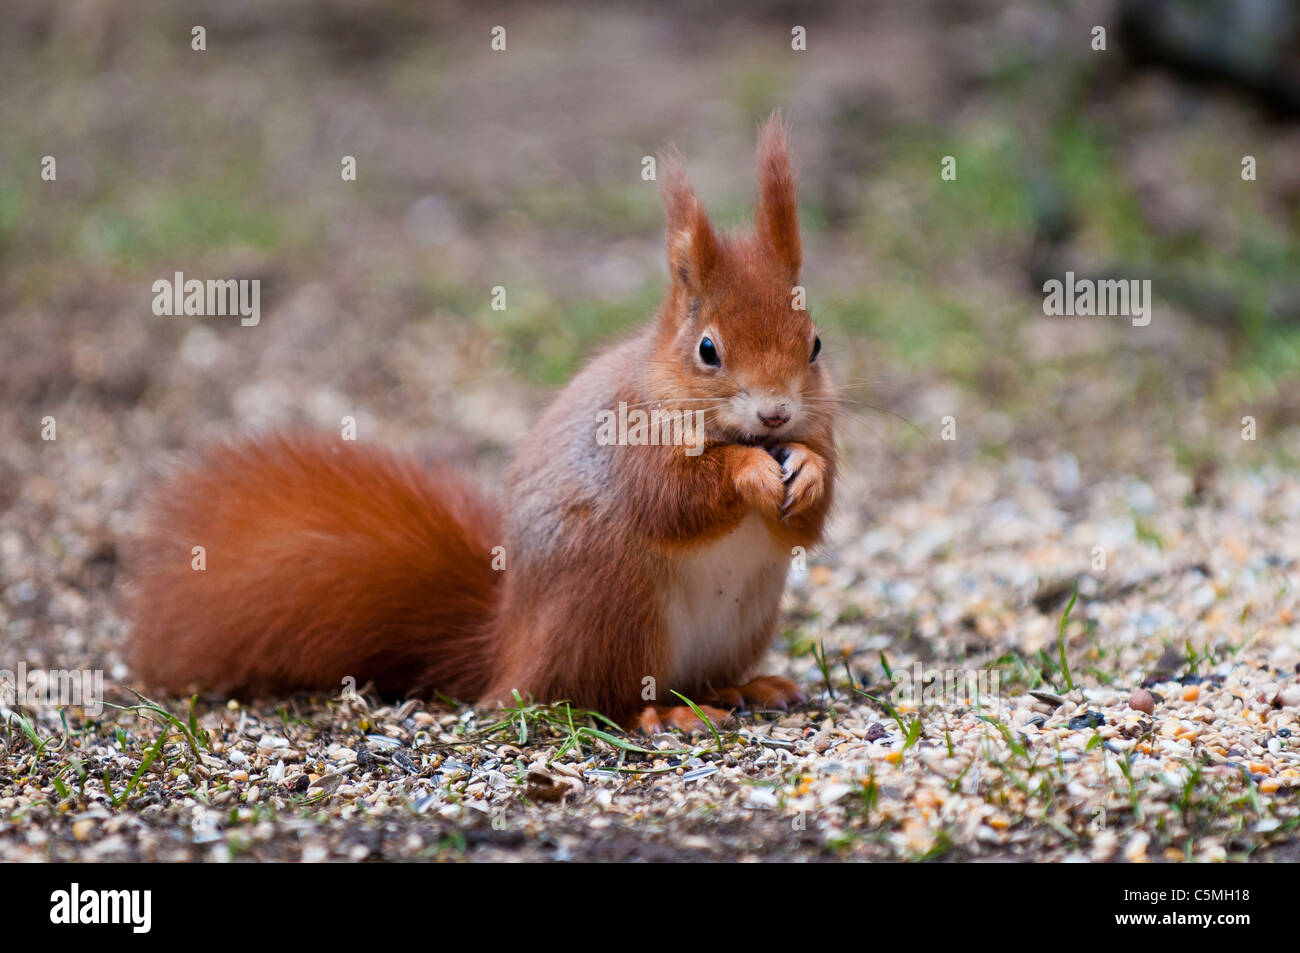 Red Squirrel, Sciurus vulgaris, eating Stock Photo